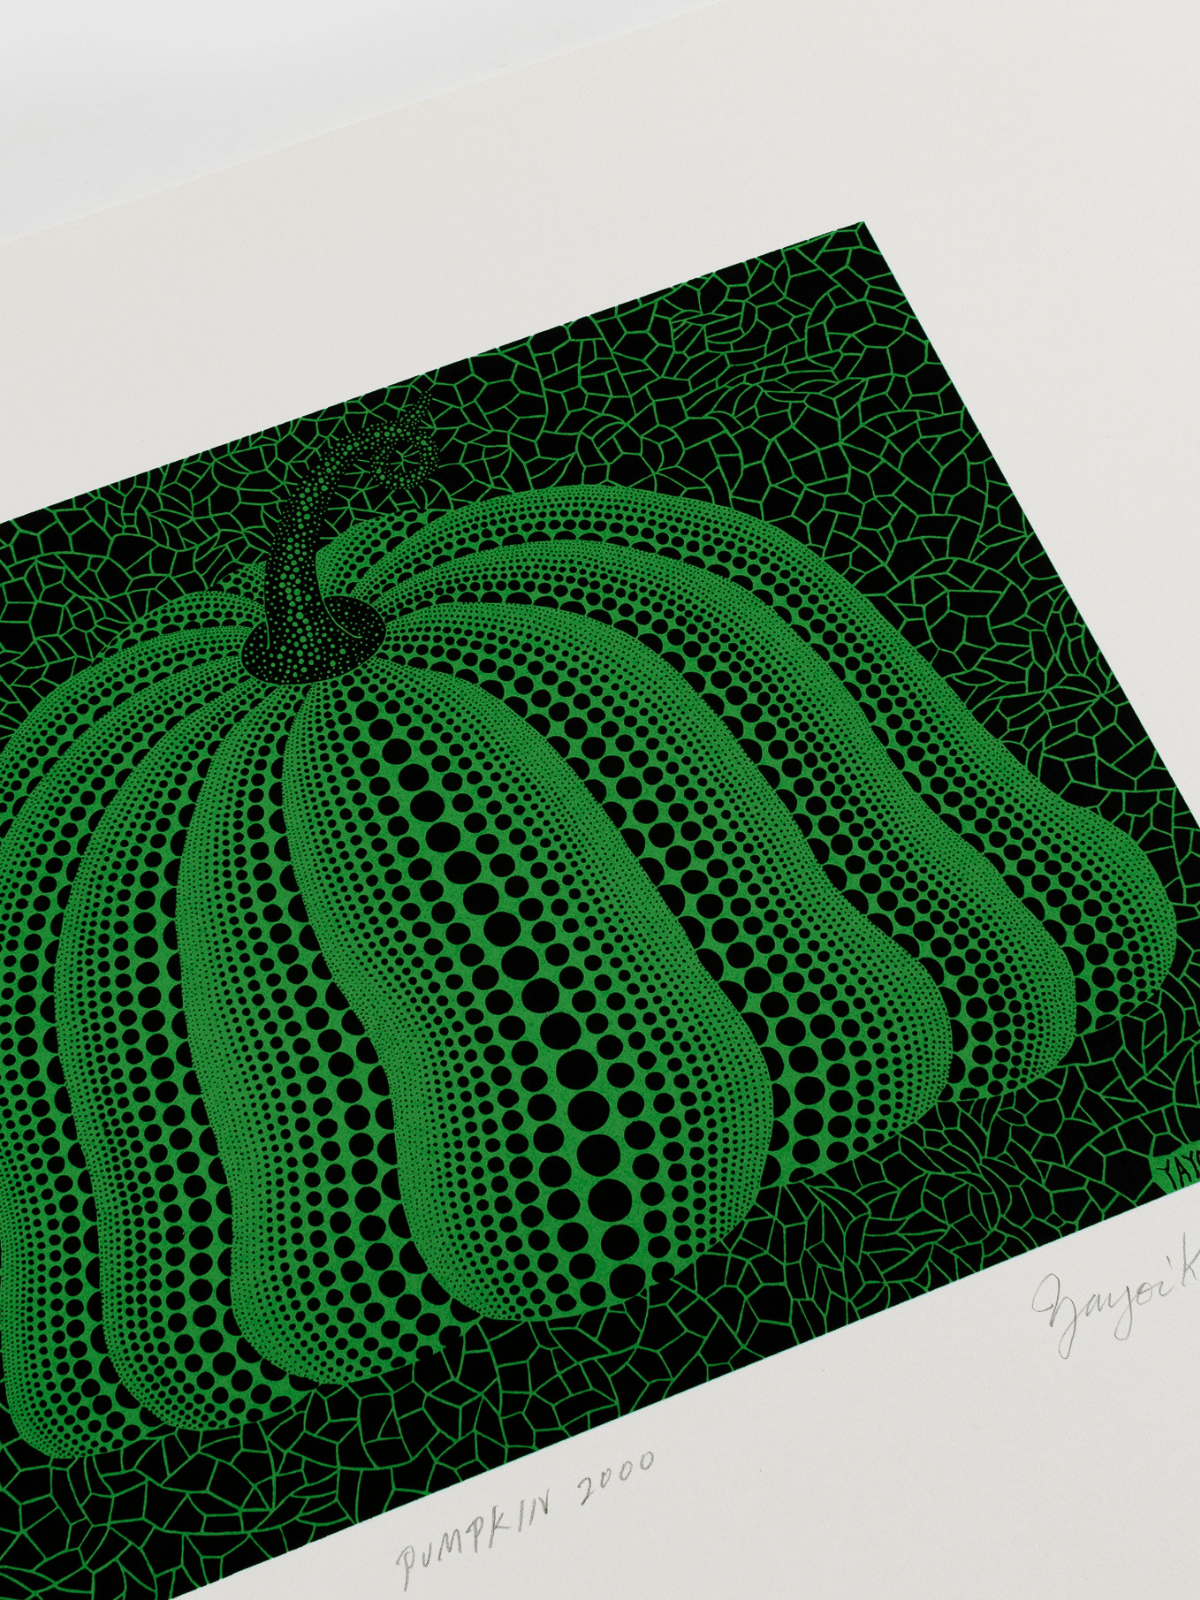 Yayoi Kusama Green Pumpkin Print 